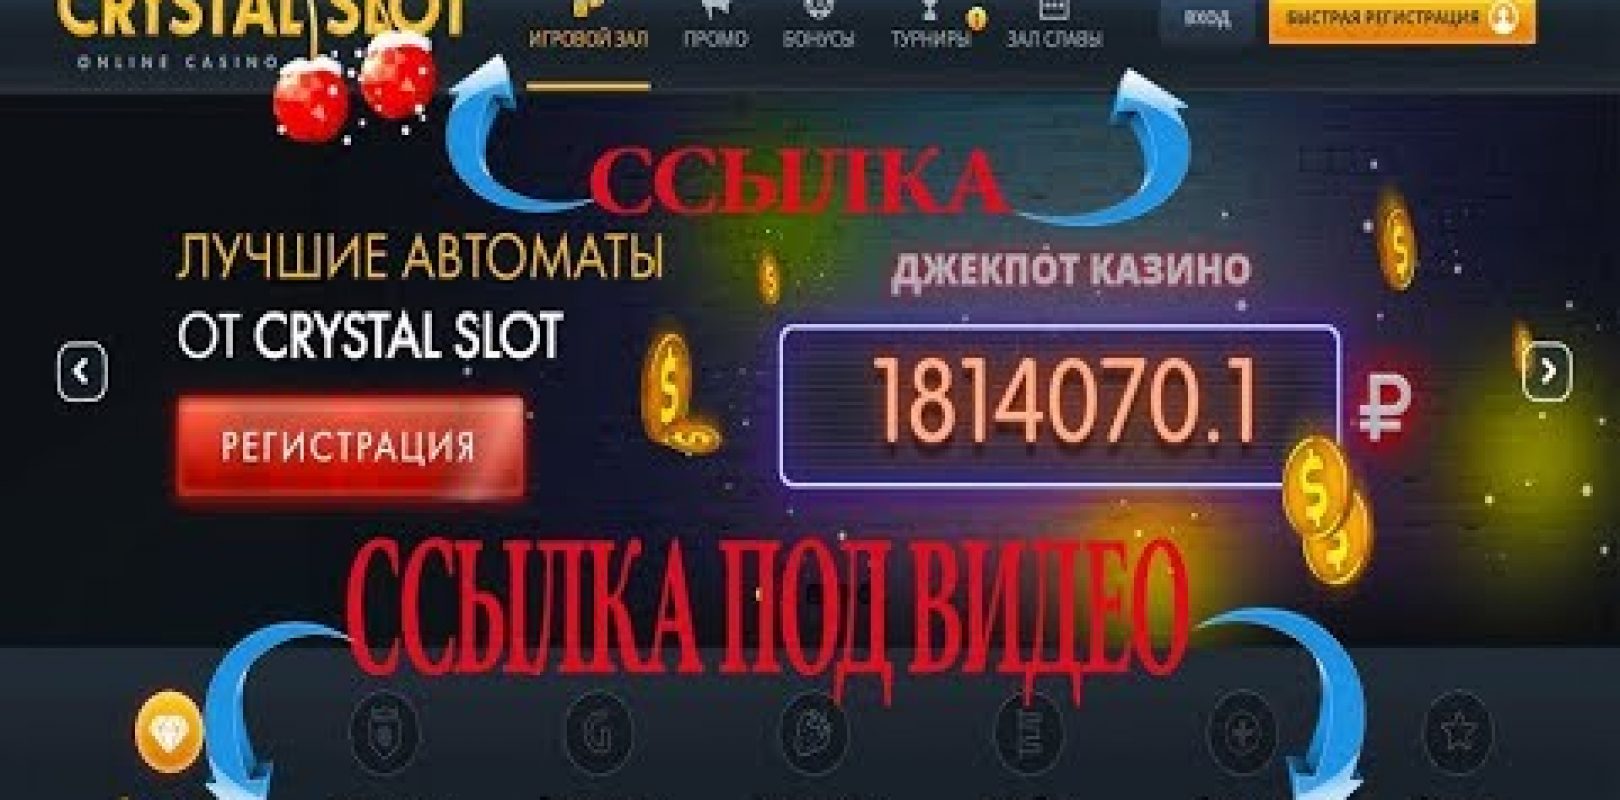 Екатеринбург игровые автоматы покеры